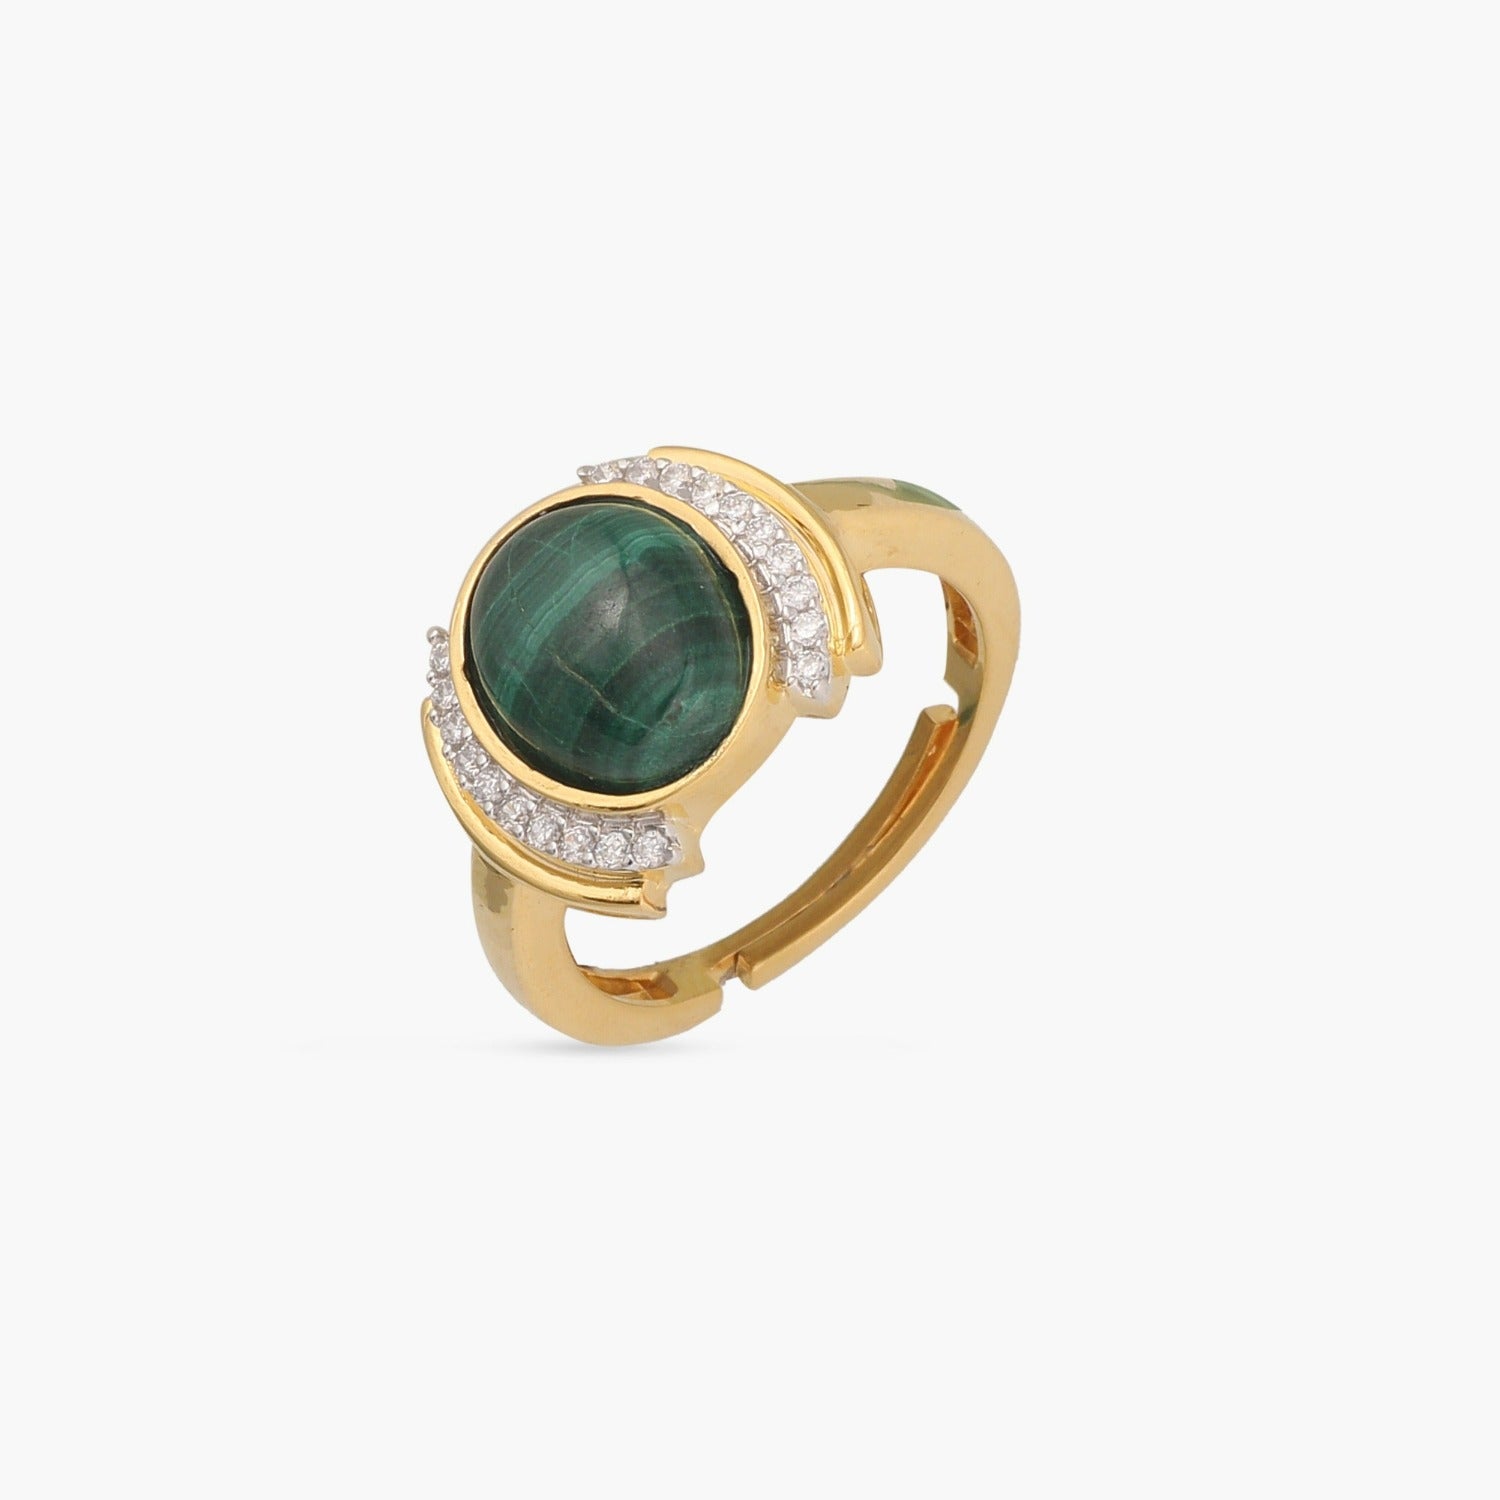 Gold Finger Ring Designs Online for Women -?PC Chandra